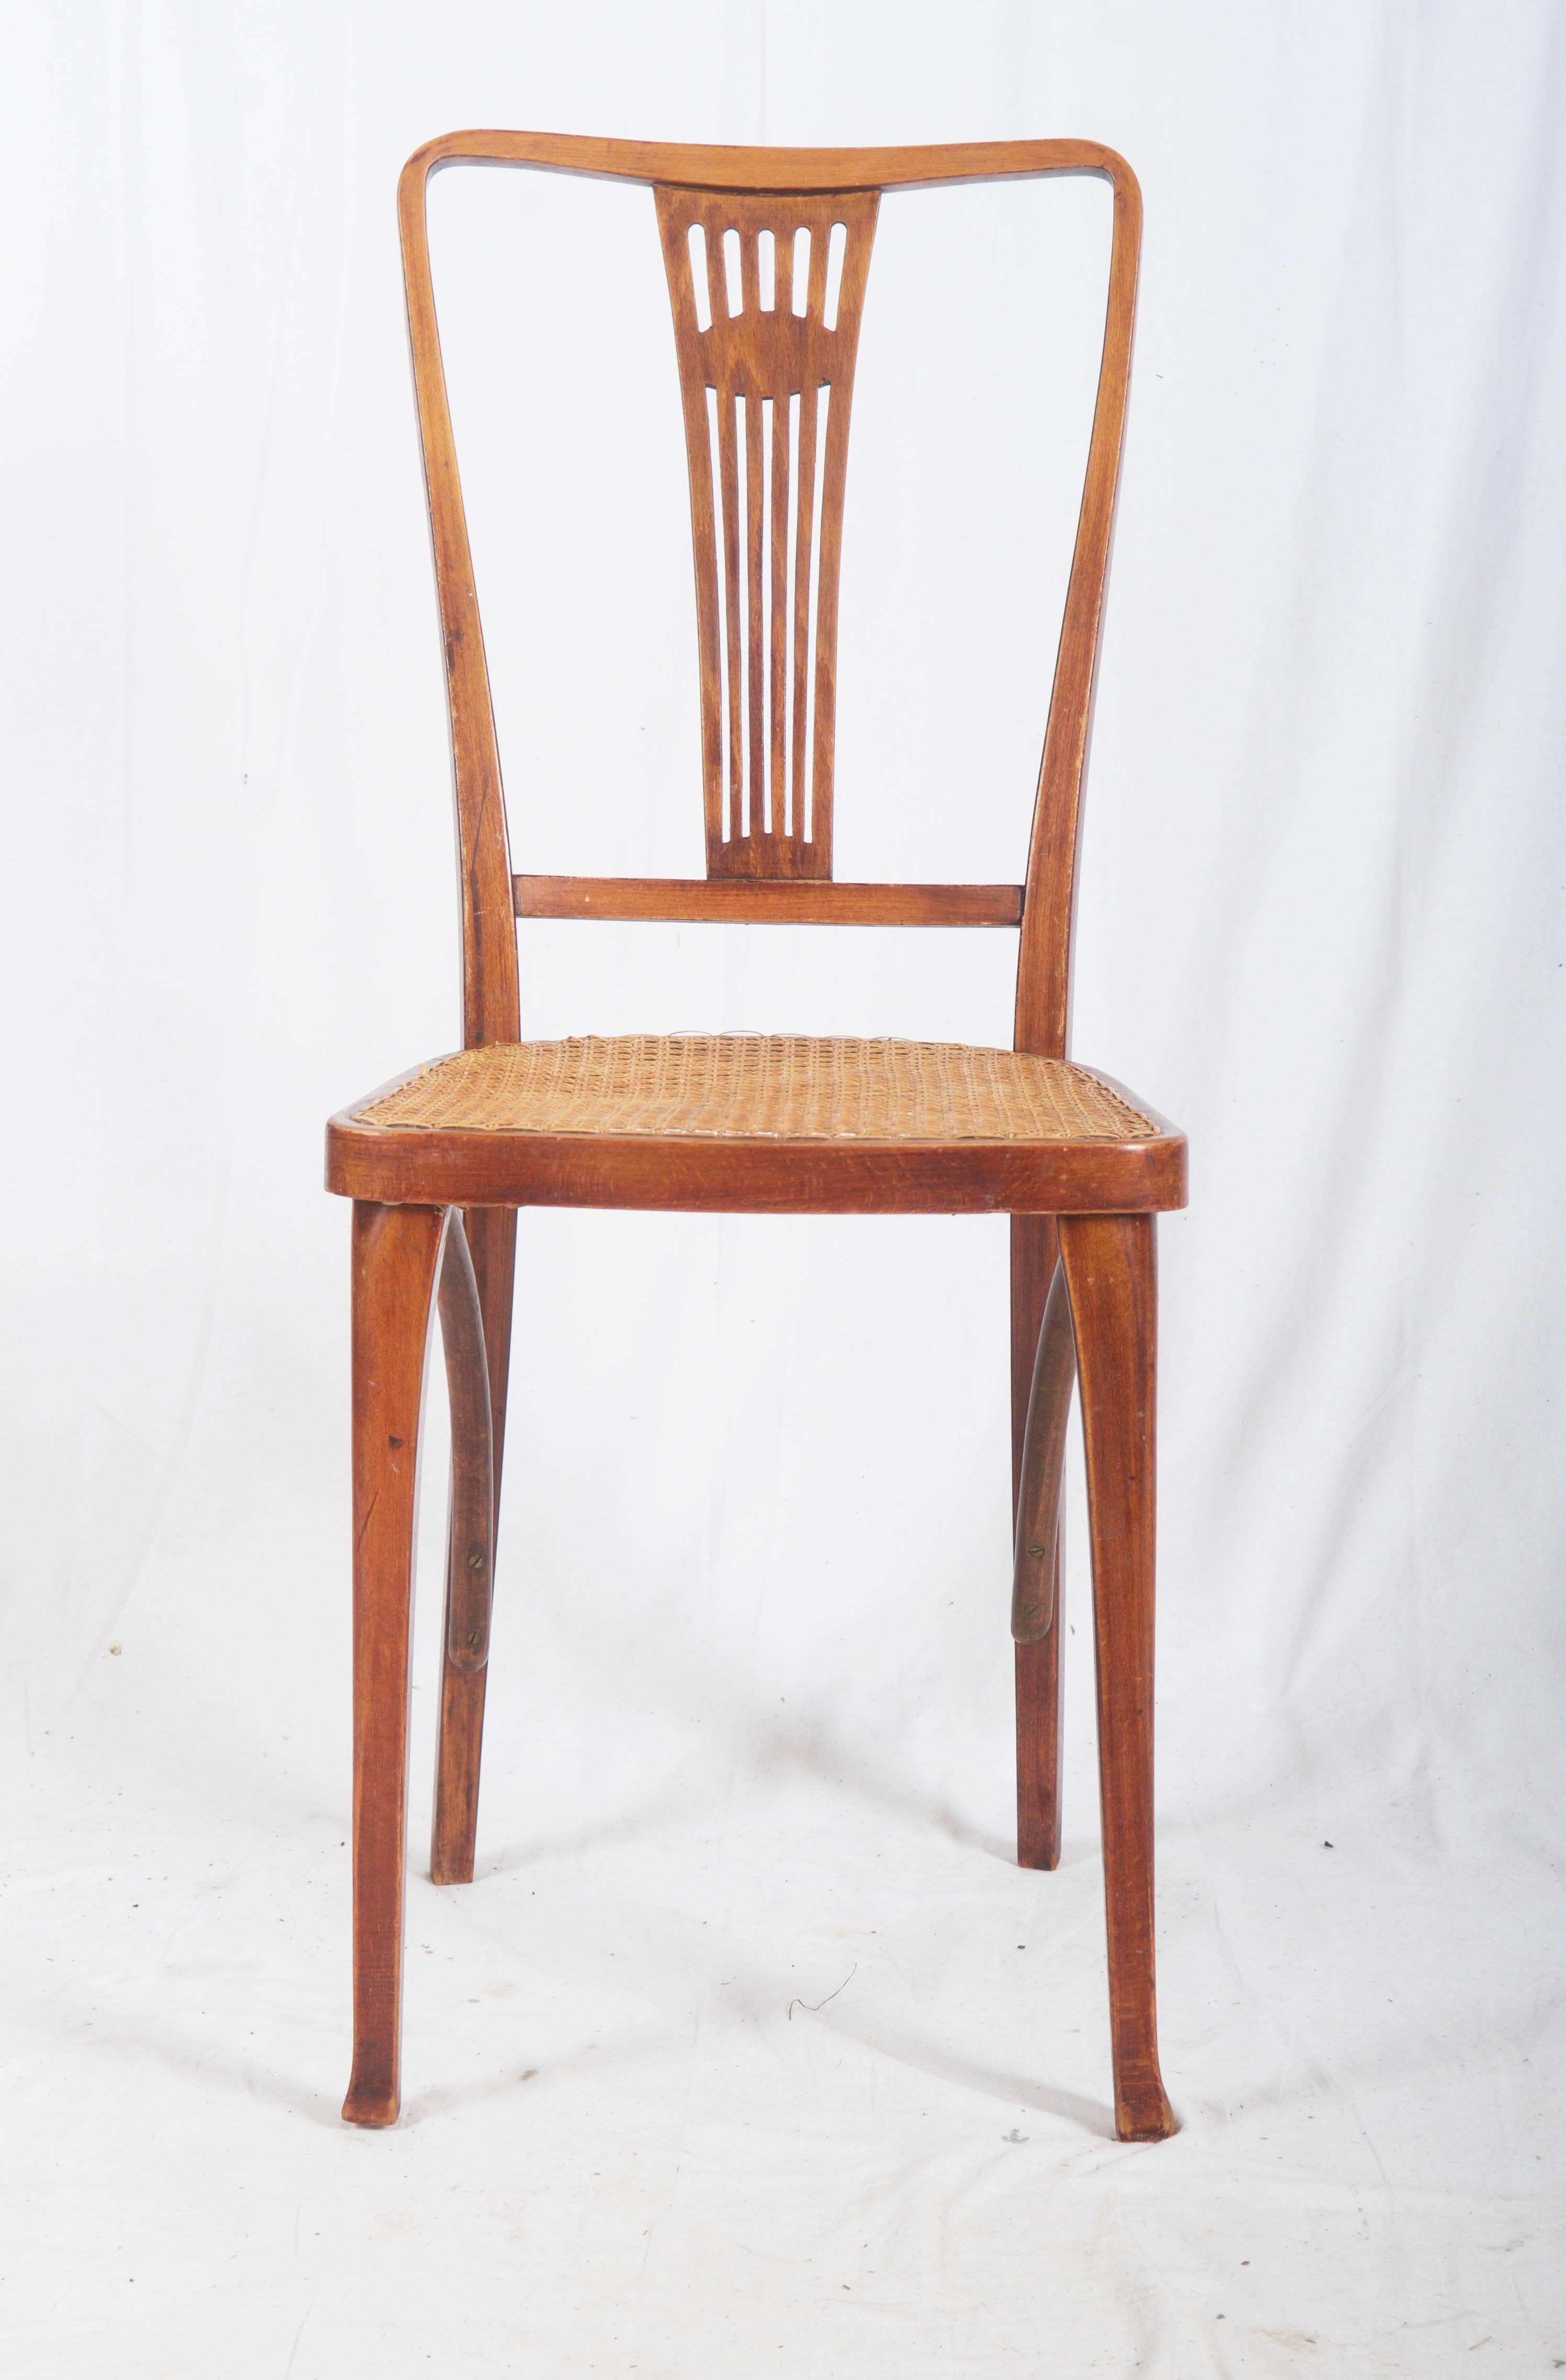 Chaises Thonet avec assise cannée (cannage neuf).
Restauré professionnellement avec de nouvelles canettes
jusqu'à trois pièces disponibles.